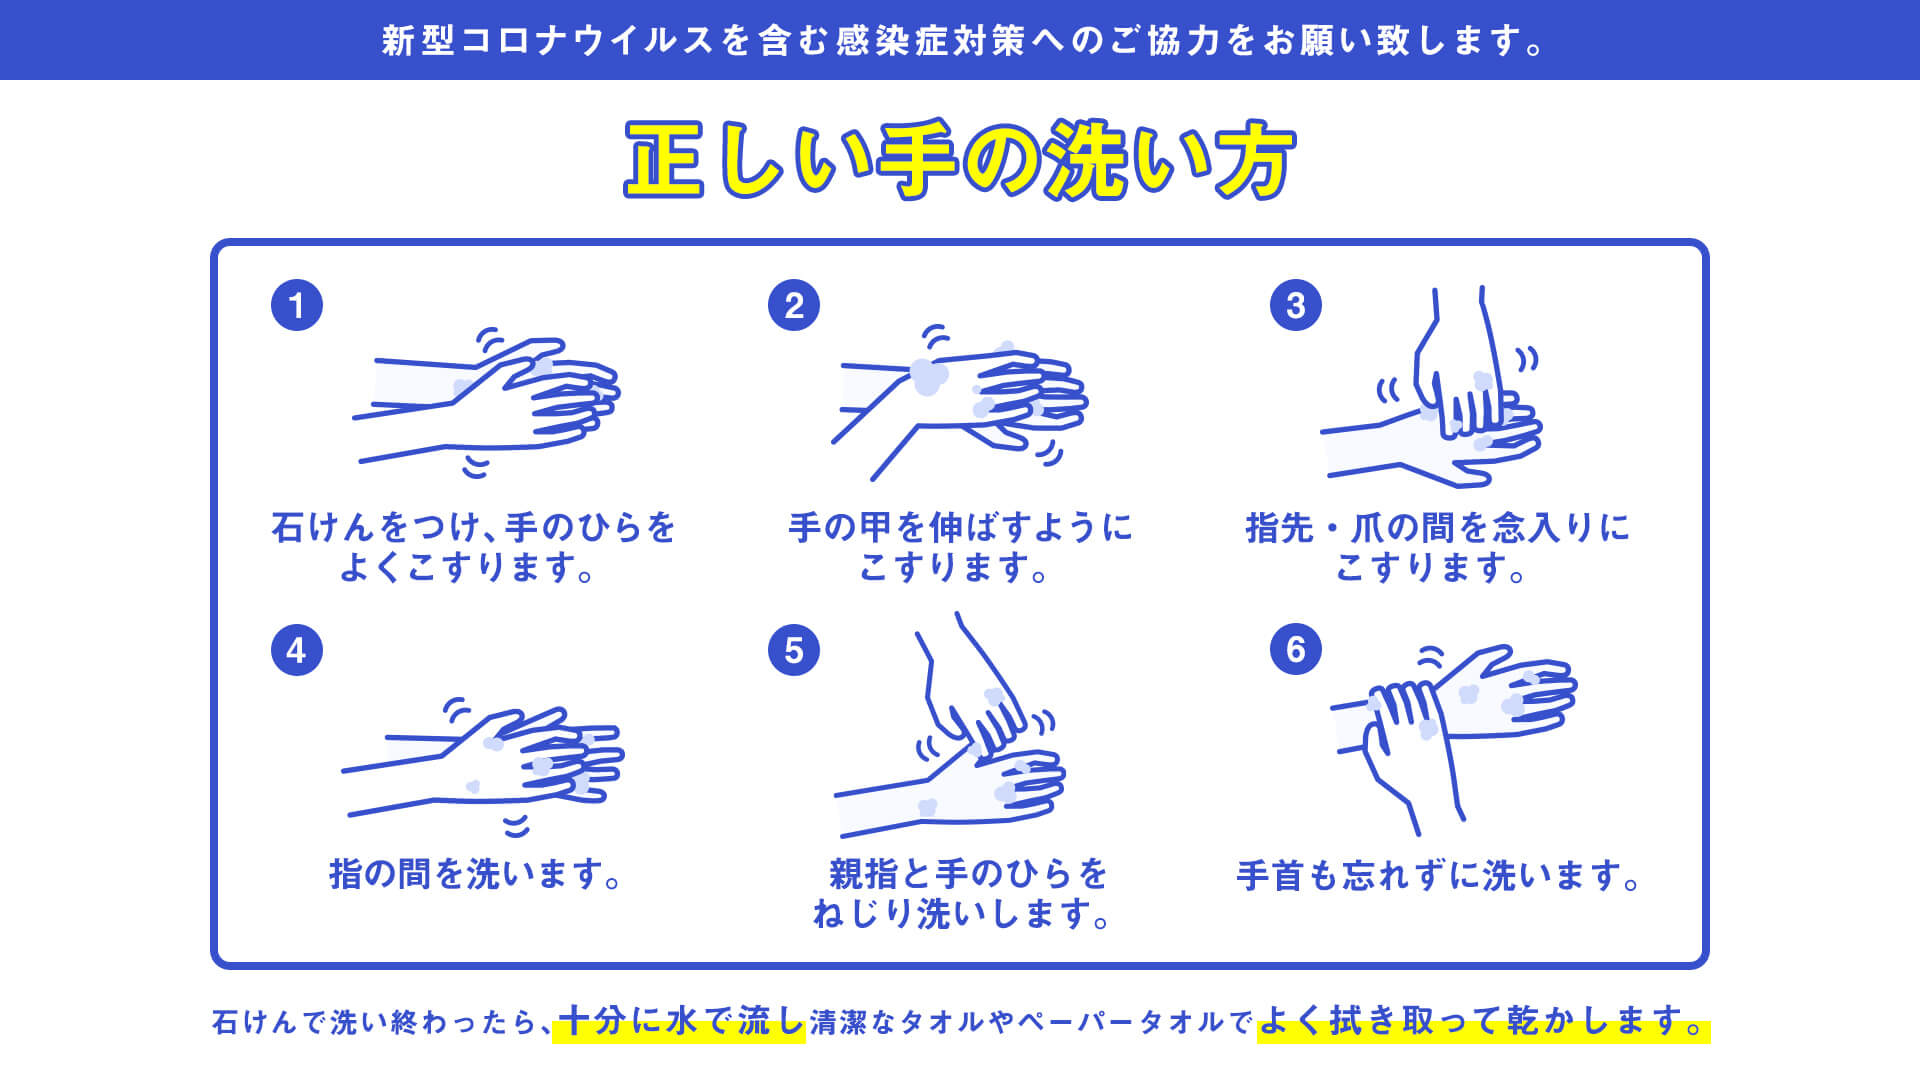 正しい手の洗い方